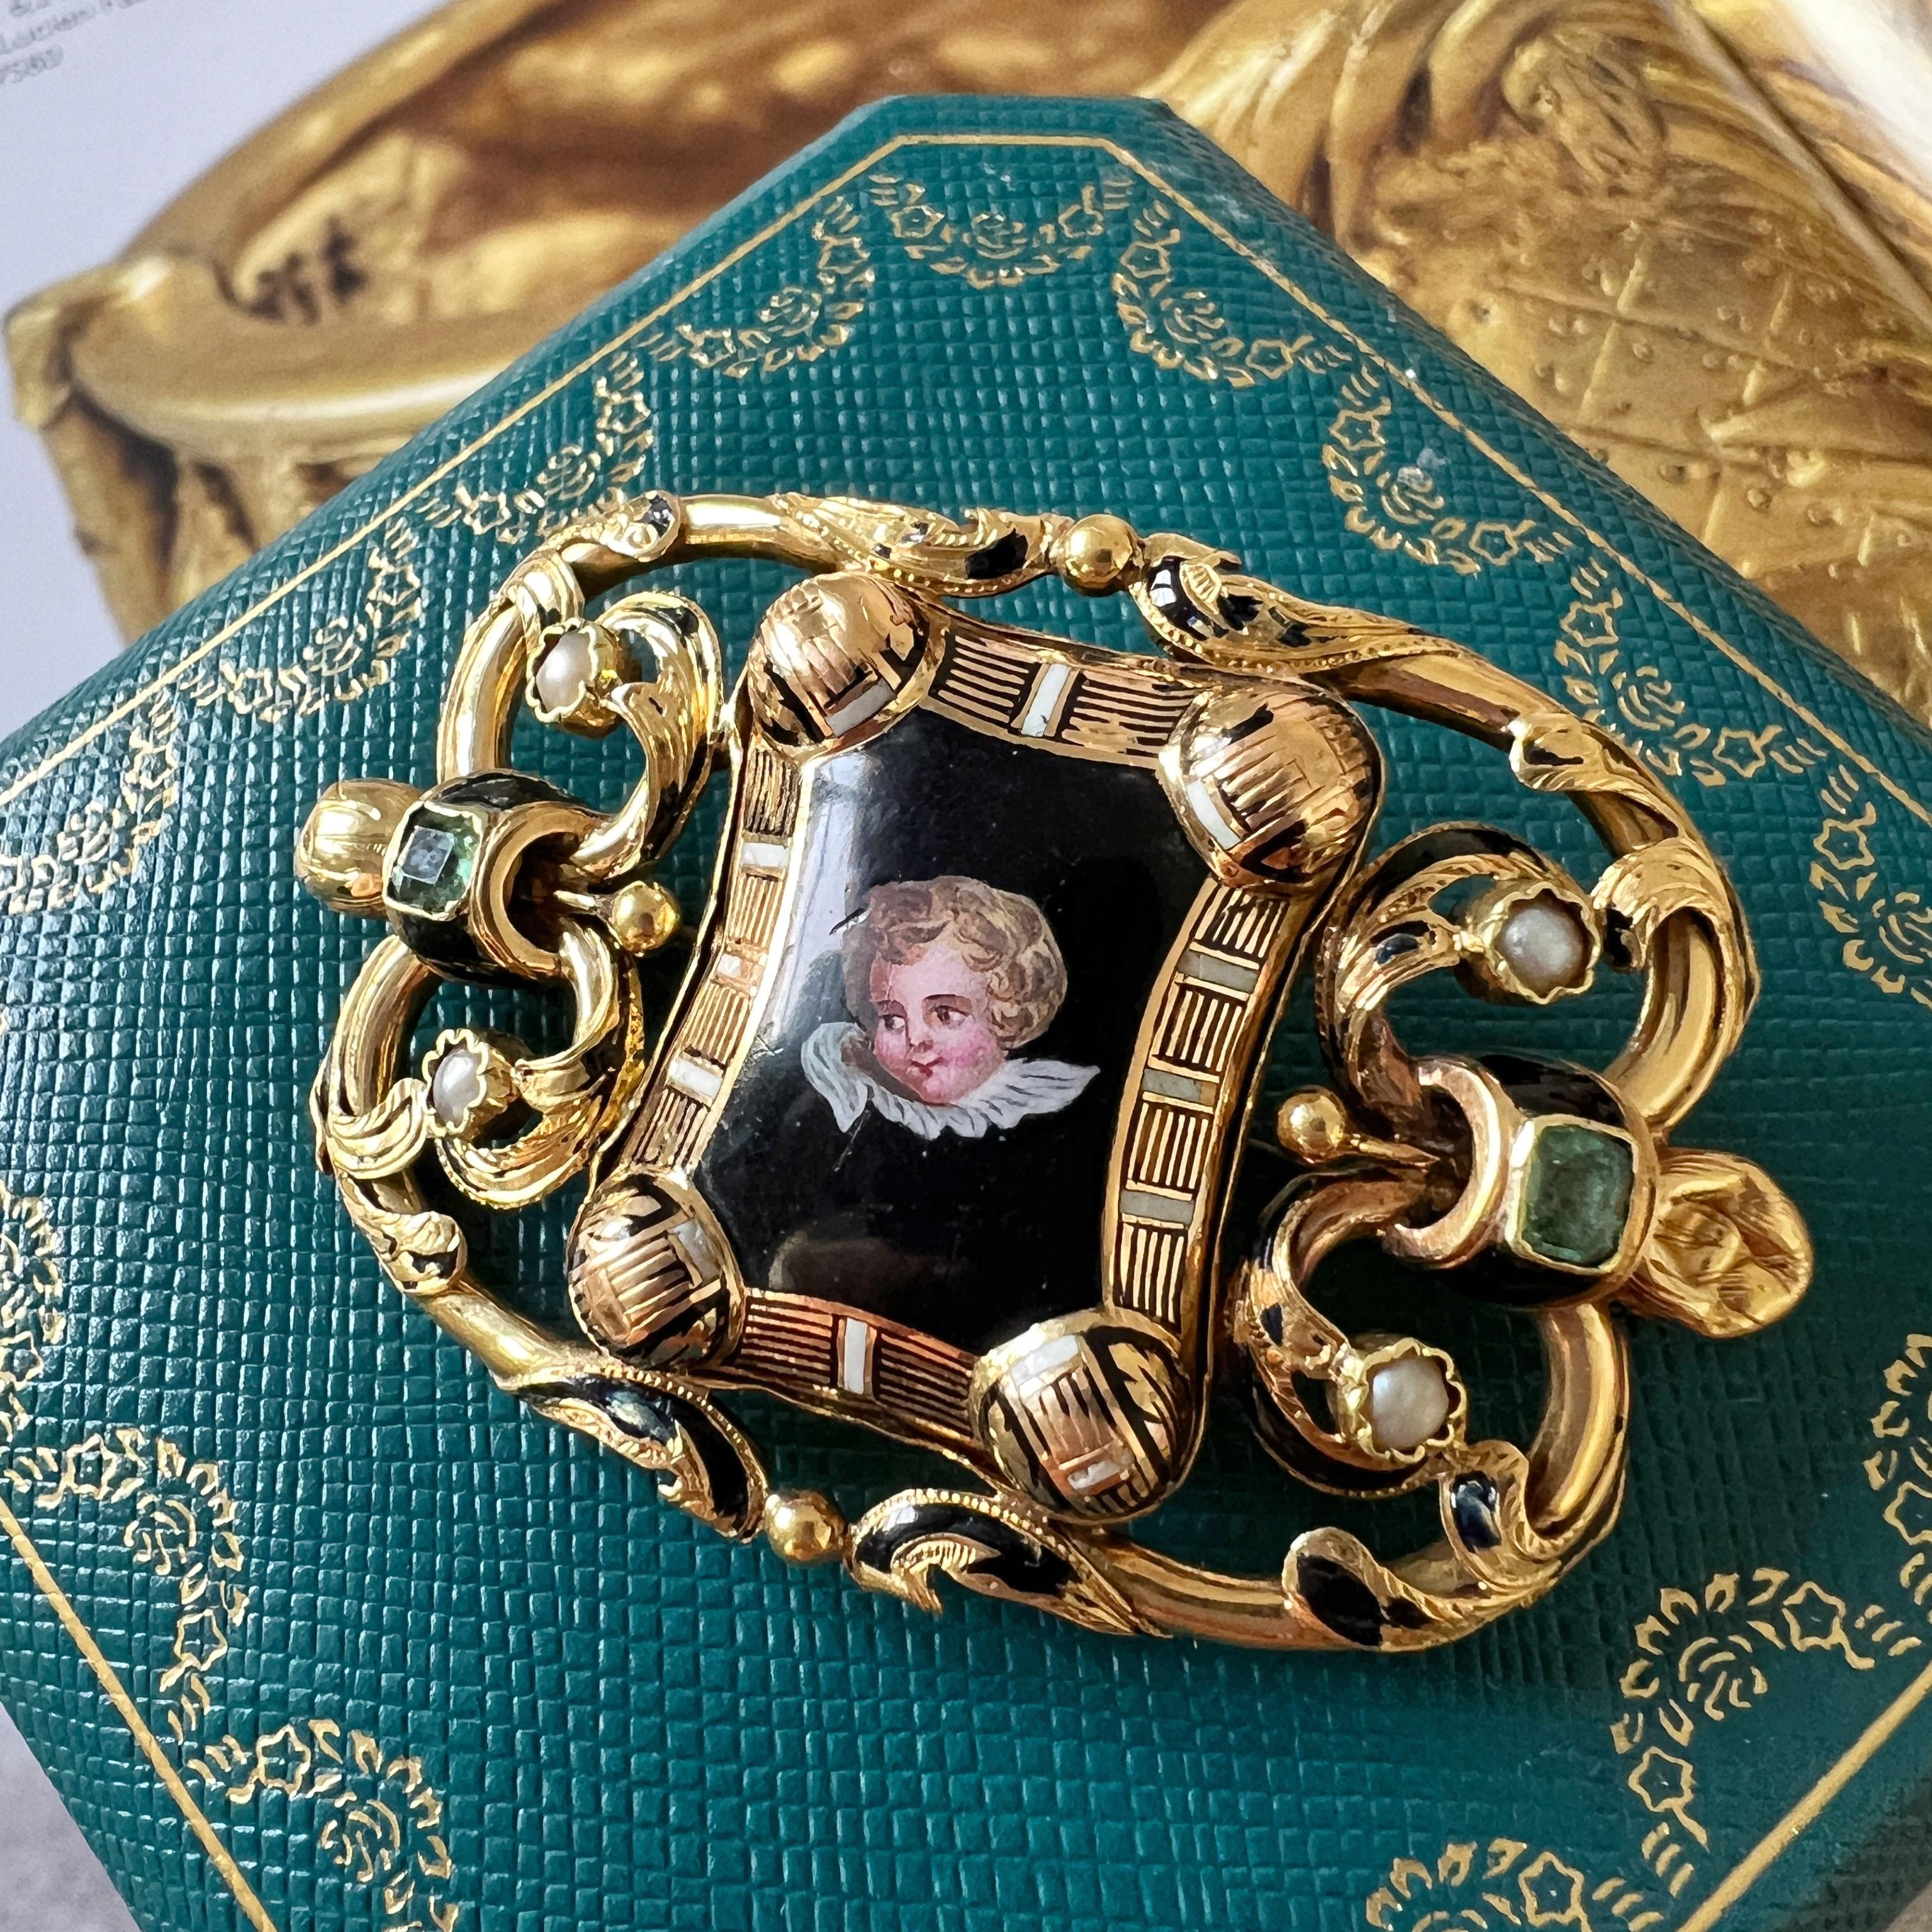 Zum Verkauf steht eine 18-karätige Goldbrosche aus der viktorianischen Ära, die den zeitlosen Charme eines verliebten Cherubs einfängt, der in feiner Handarbeit mit komplizierten Details bemalt wurde. Eingebettet in ein Gemälde aus feiner Emaille,